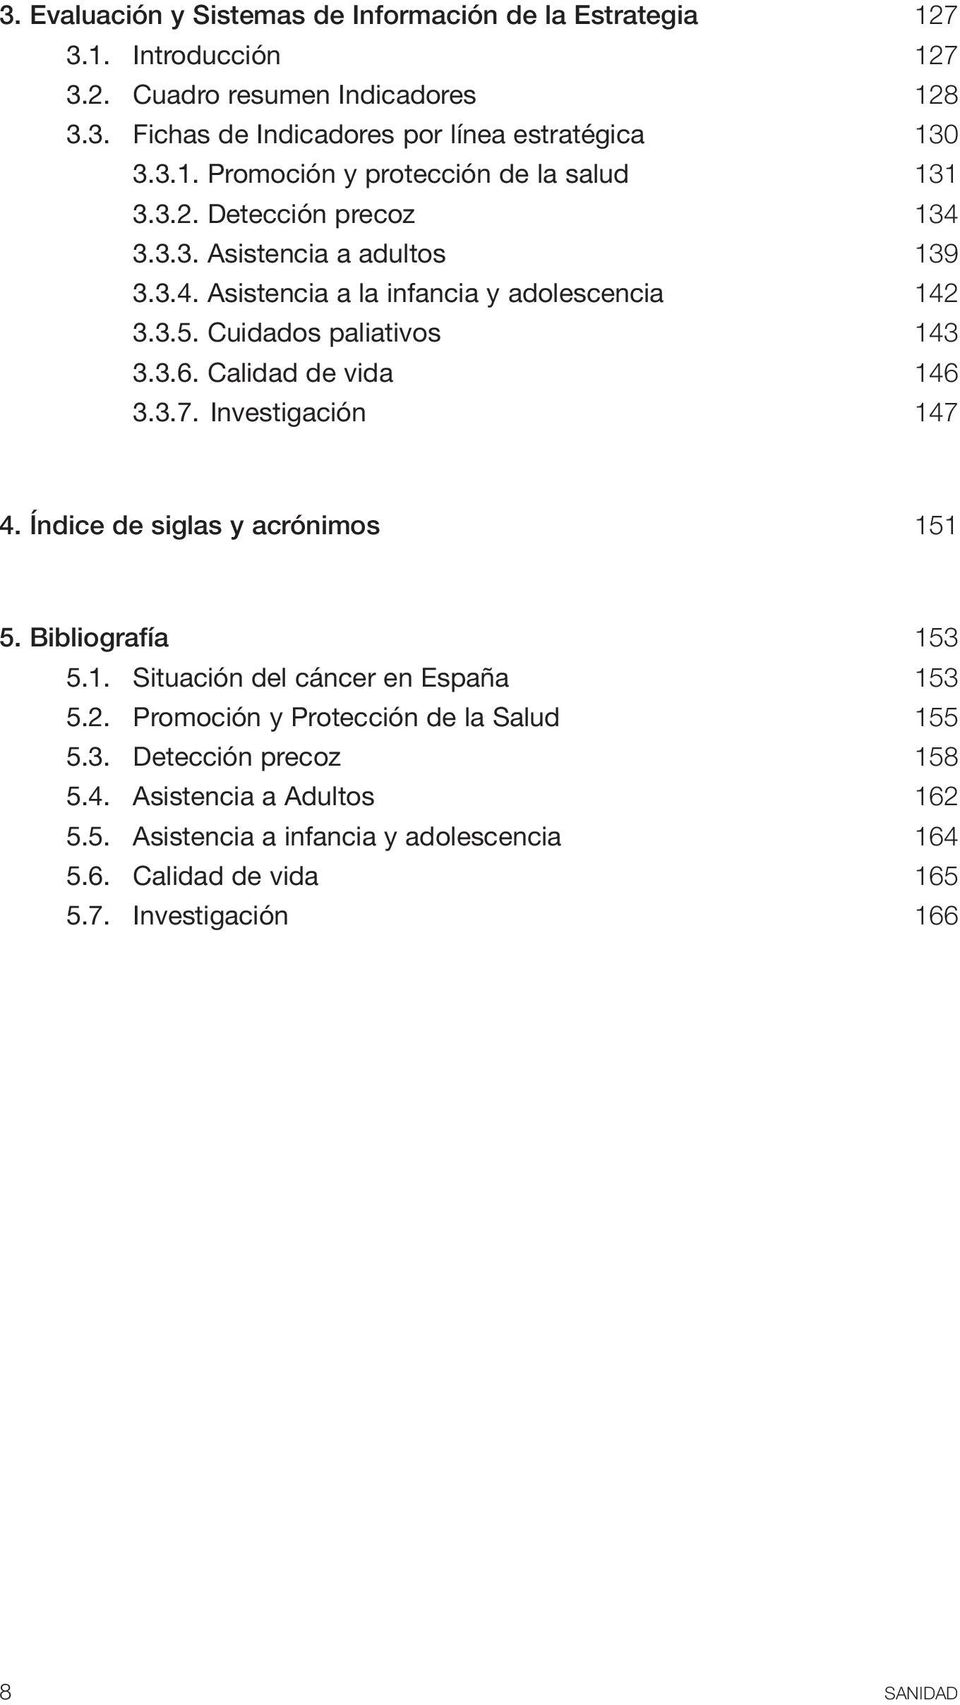 Investigación 147 4. Índice de siglas y acrónimos 151 5. Bibliografía 153 5.1. Situación del cáncer en España 153 5.2. Promoción y Protección de la Salud 155 5.3. Detección precoz 158 5.